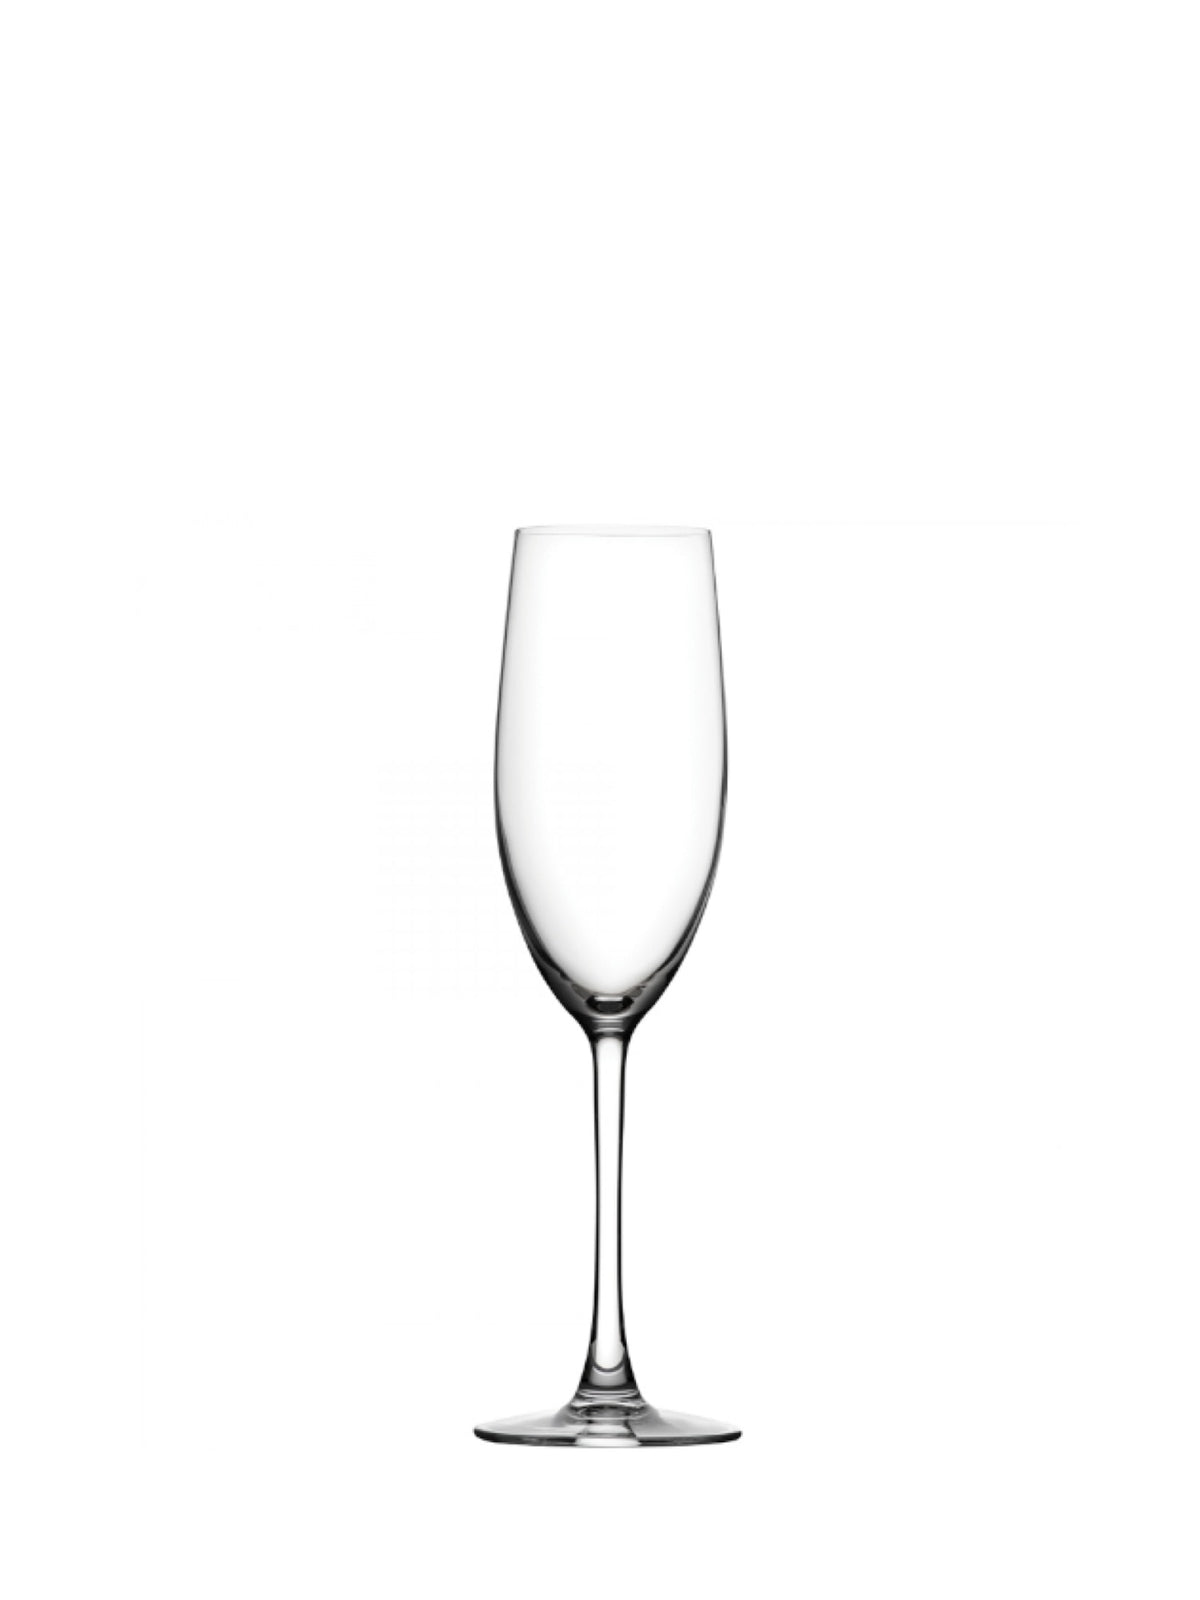 Oplev den luksuriøse følelse af at drikke champagne i dette smukke Reserva Champagne Glas.